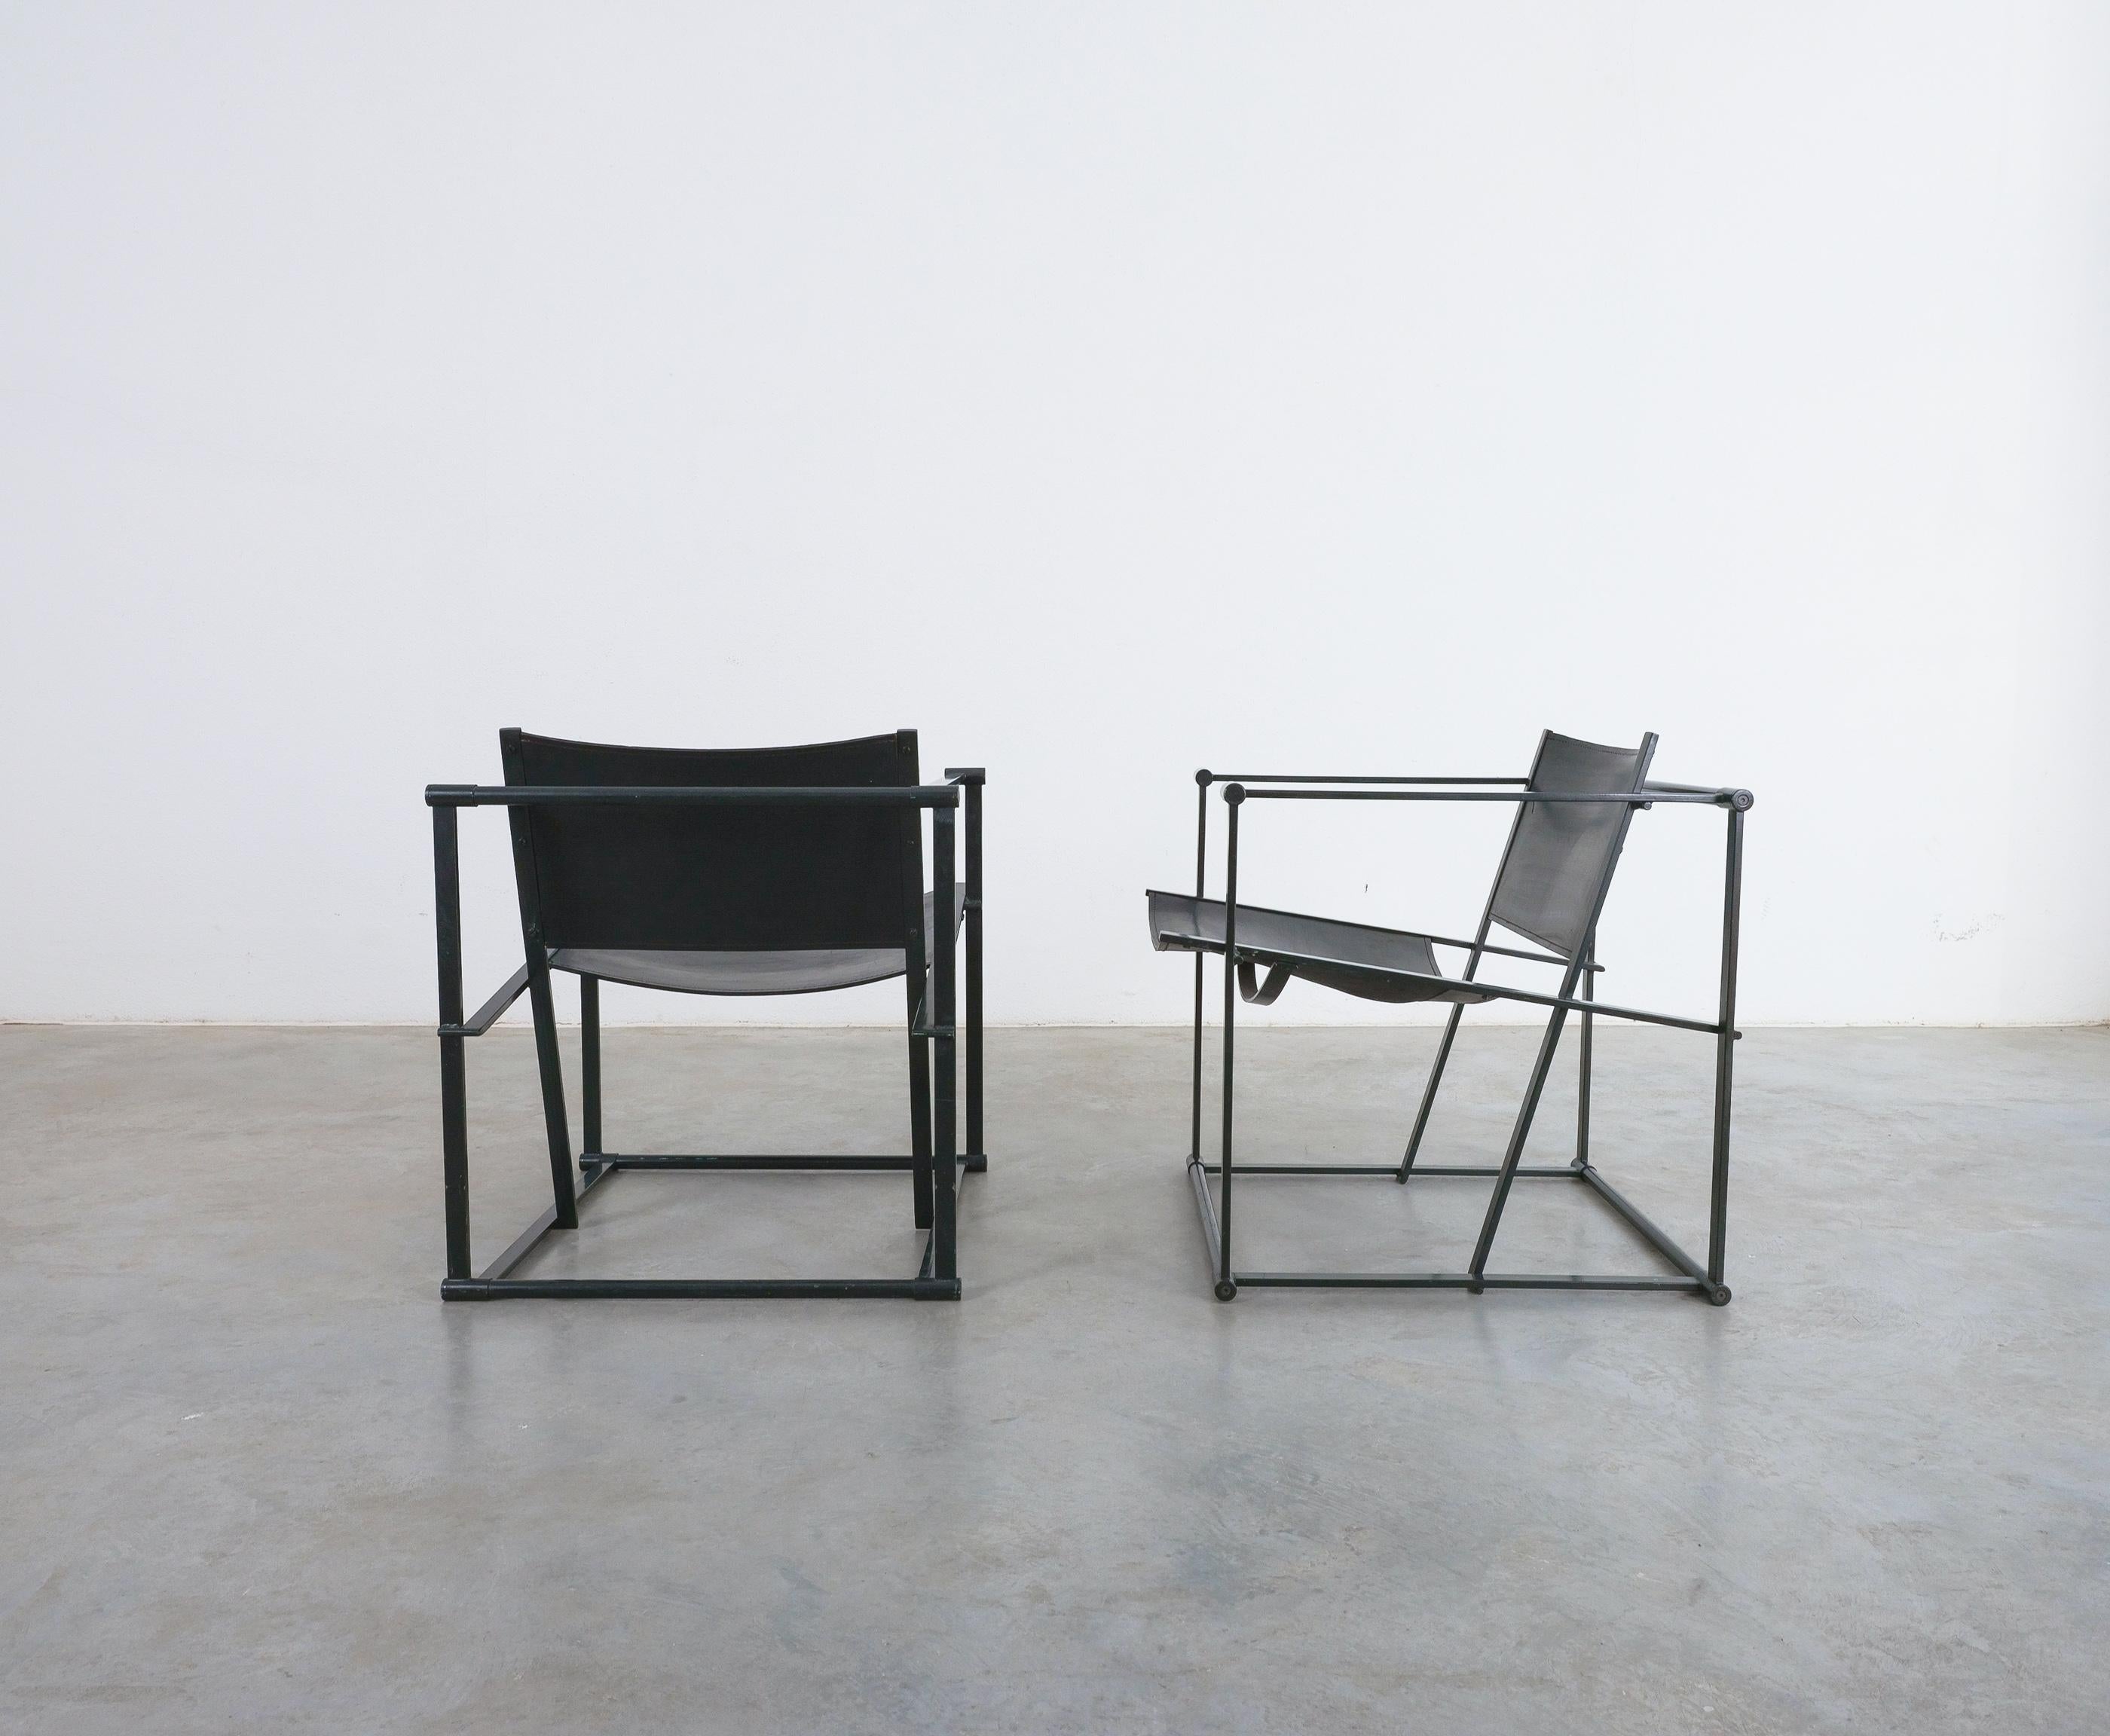 Acier Radboud Van Beekum Lounge Chair Black Leather by for Pastoe Post Modernity, 1980 en vente